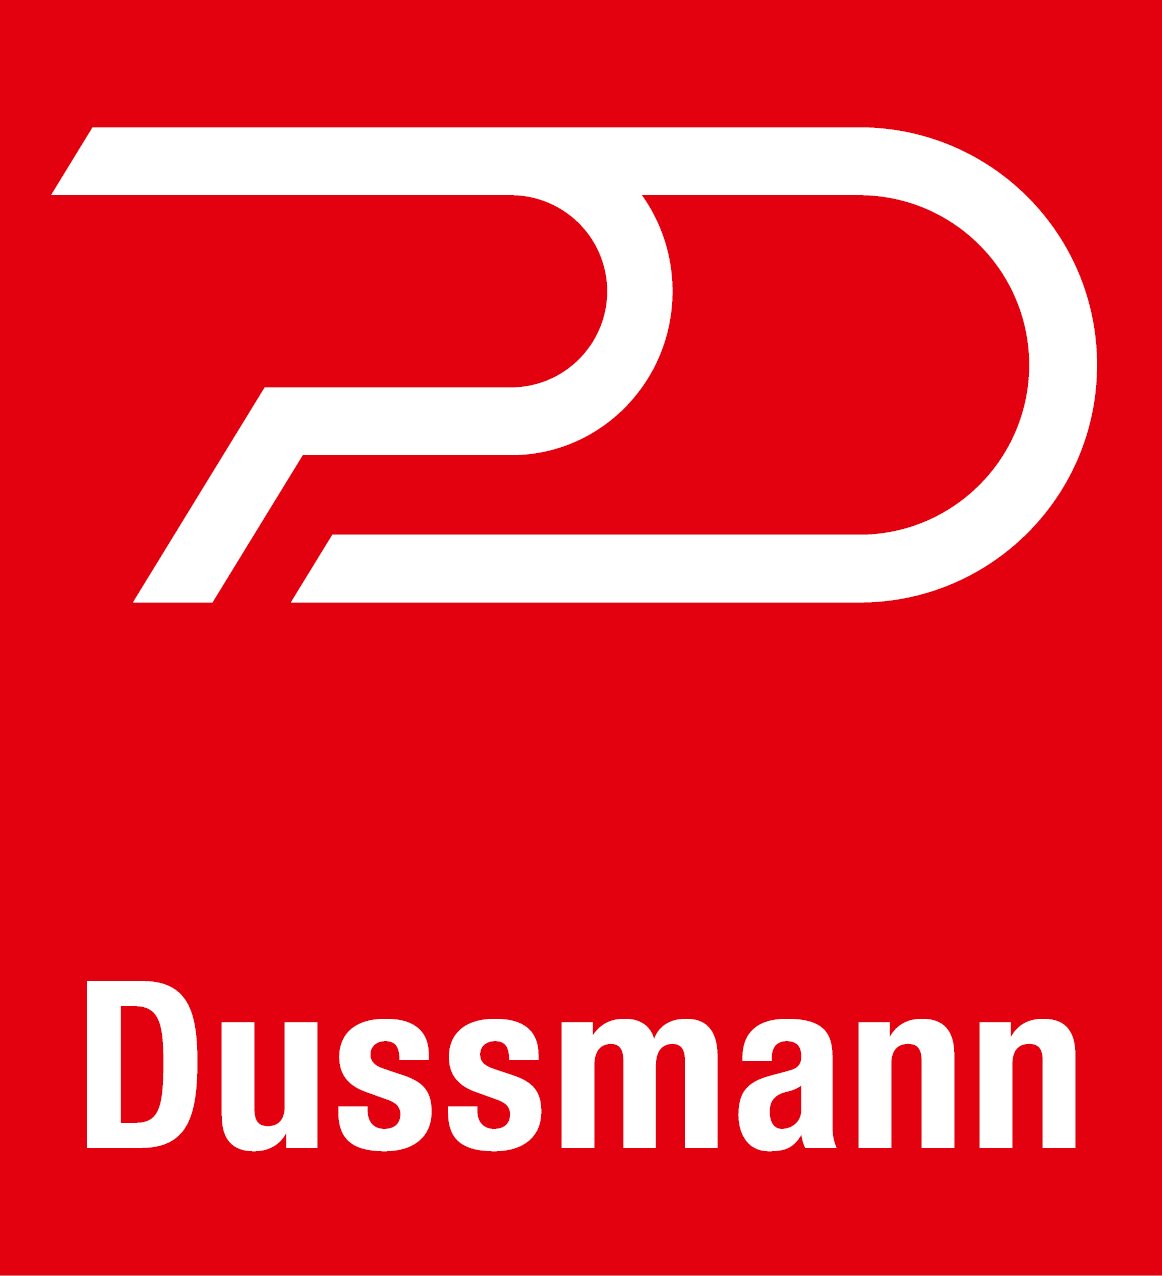 Dussmann-Logo-2013.jpg